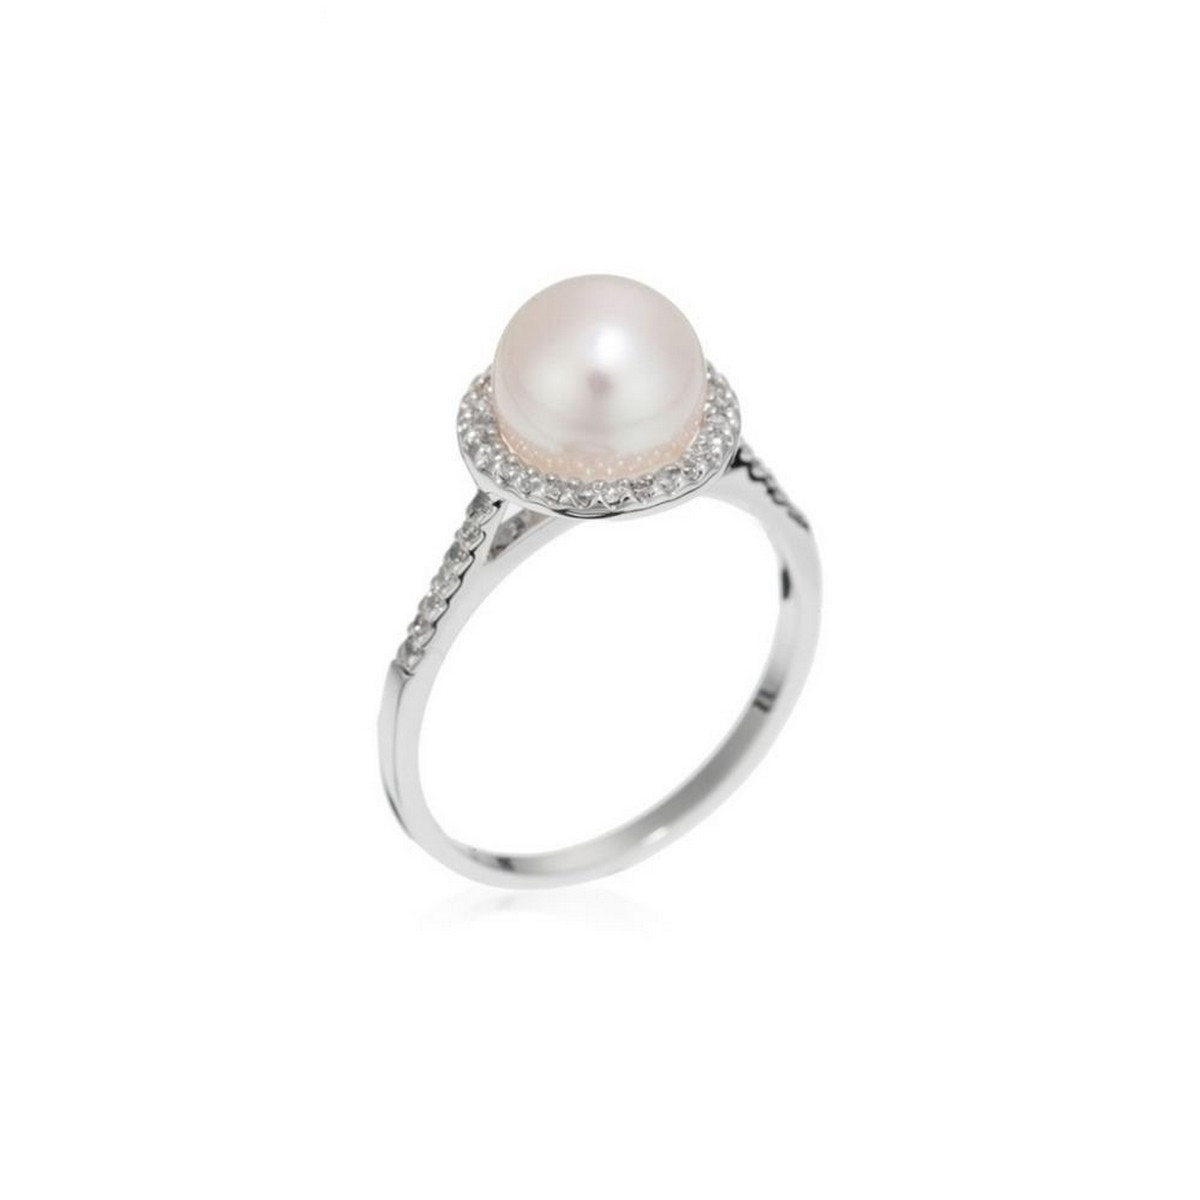 Bague "Perle enchantée" Or blanc et Diamants